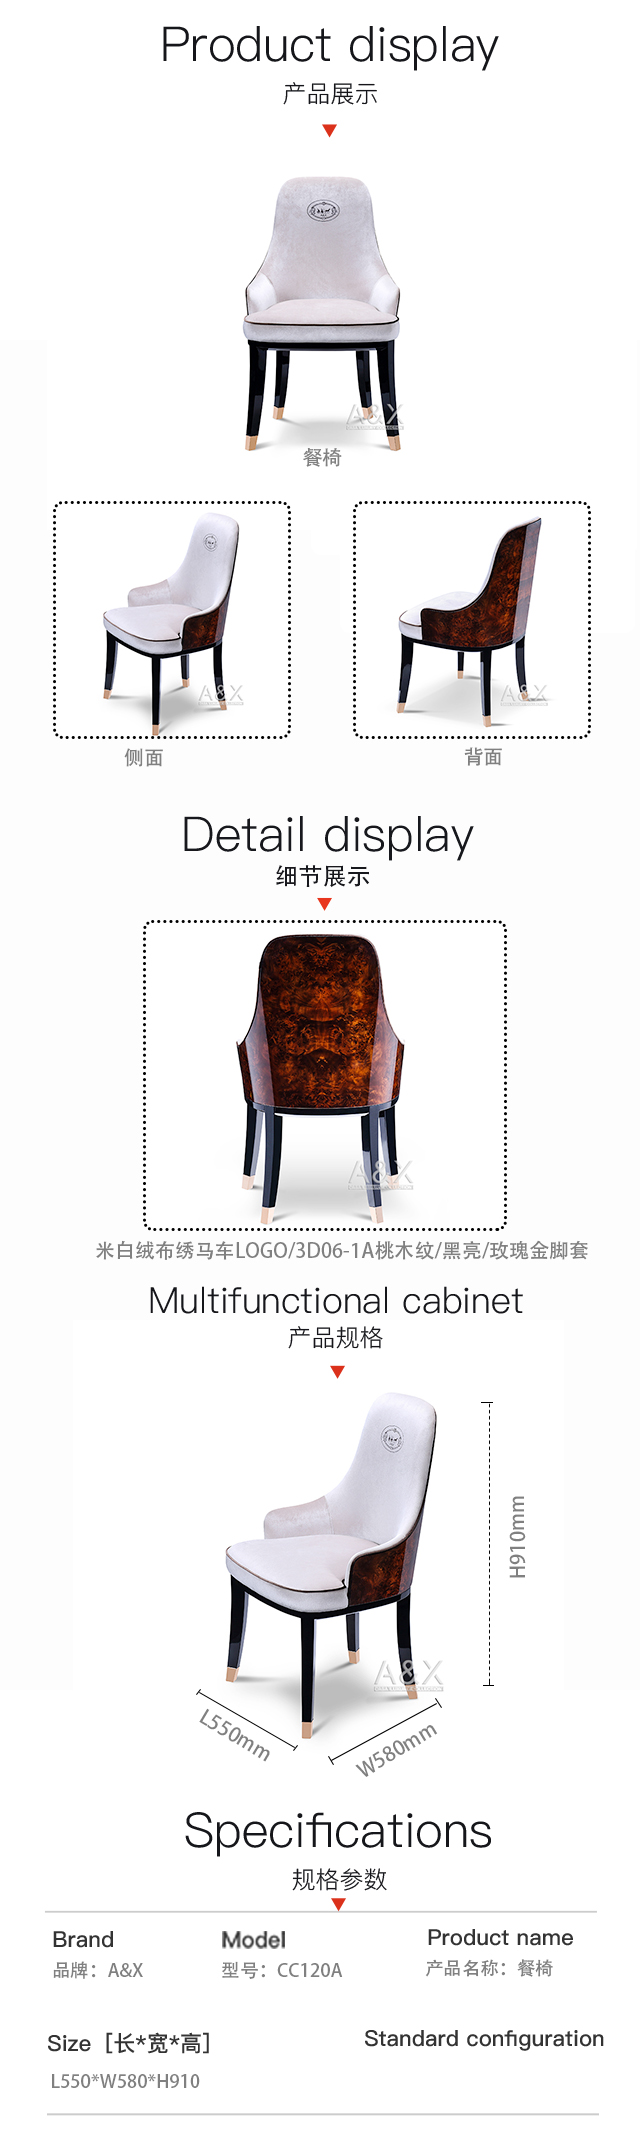 CC120A餐椅.jpg